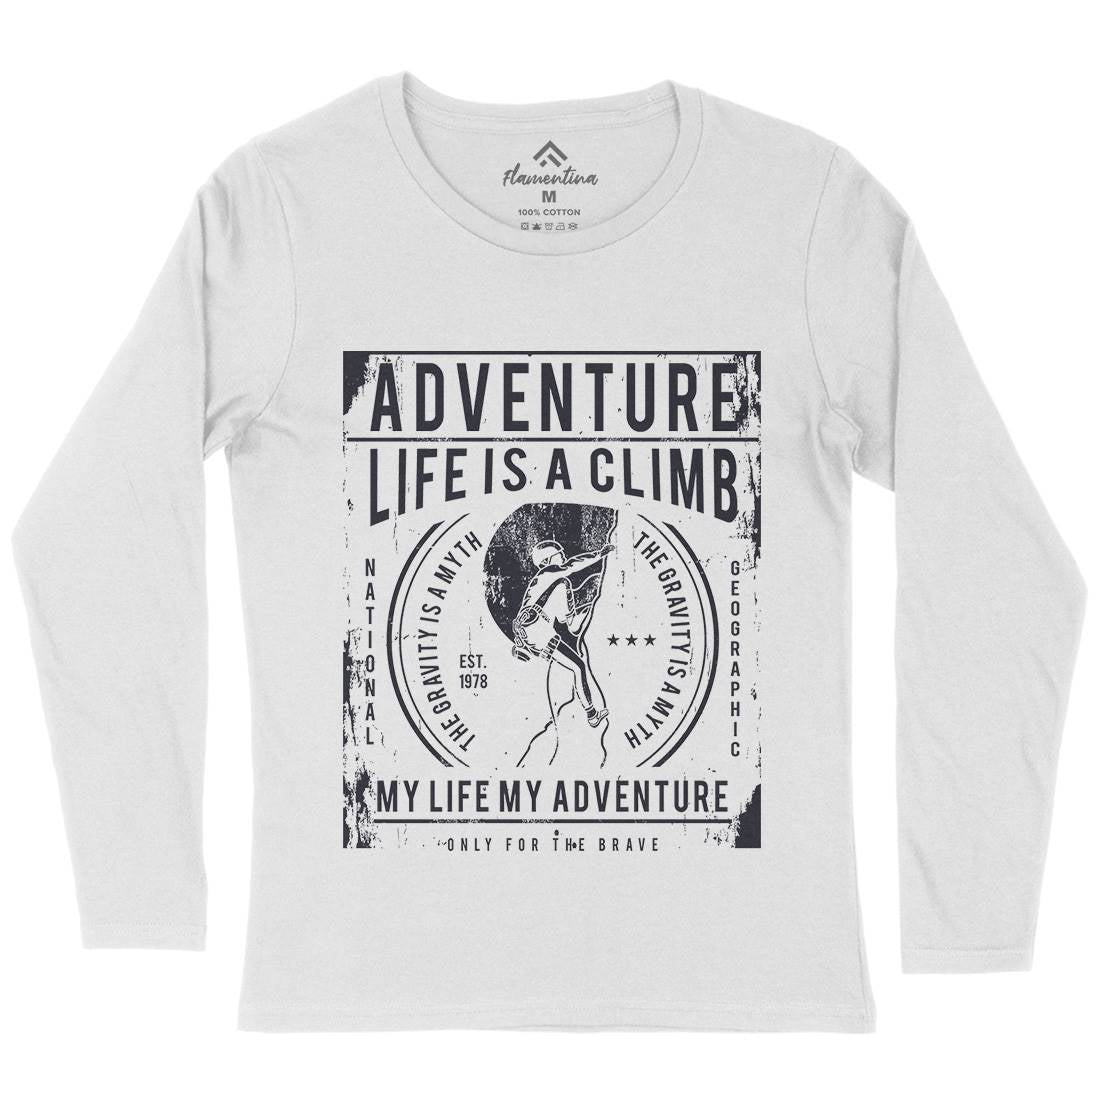 Life Is A Climb Womens Long Sleeve T-Shirt Sport A085